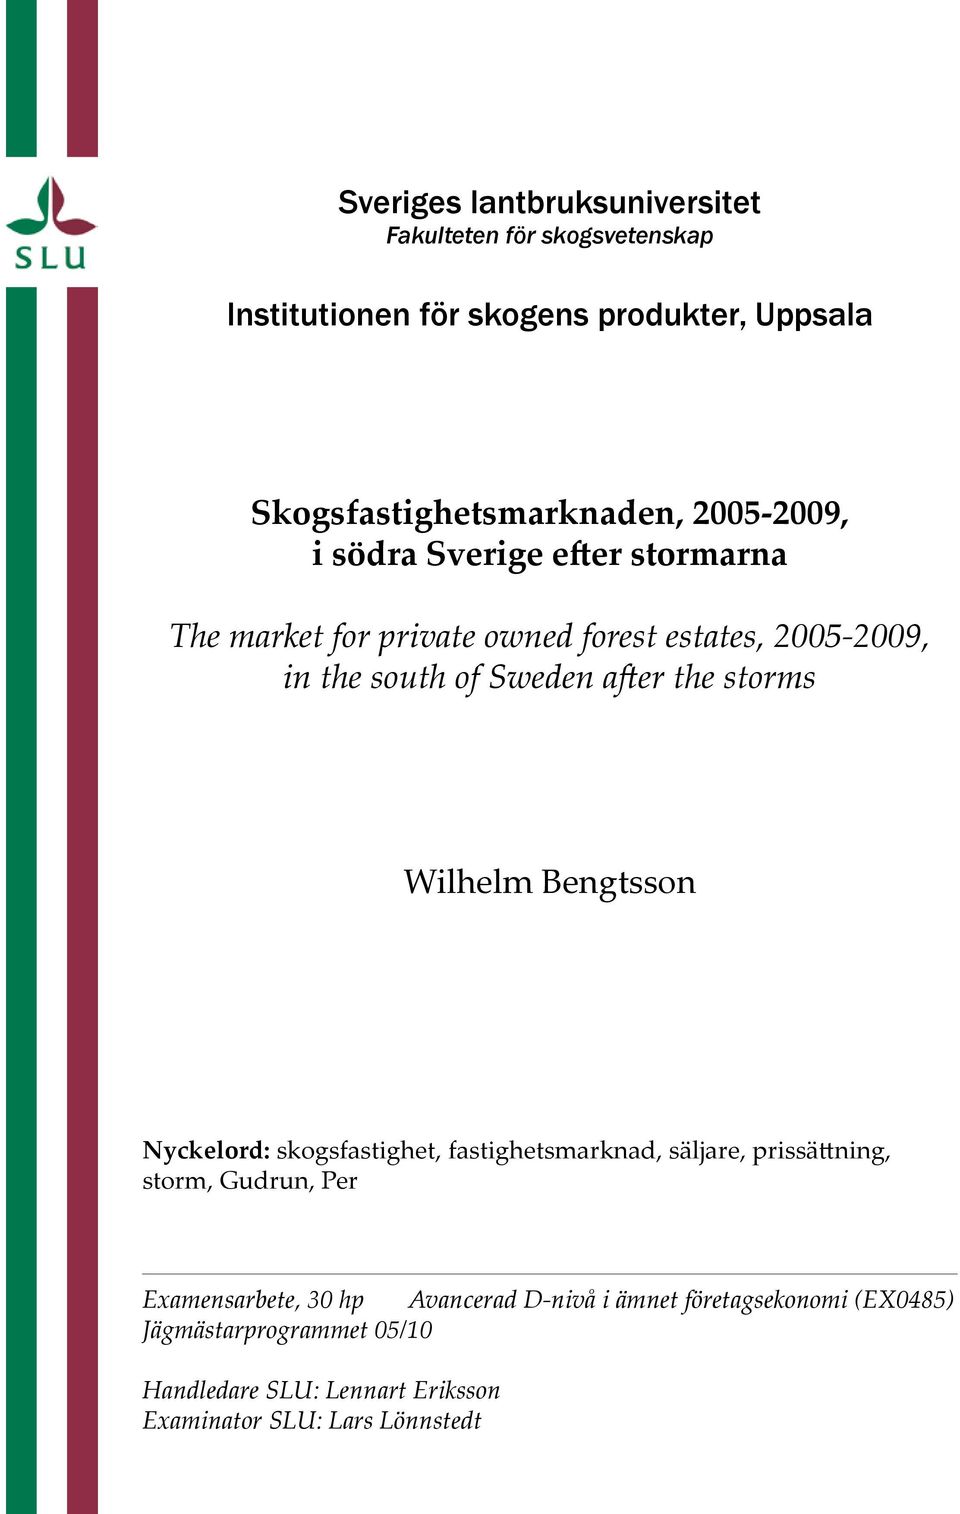 storms Wilhelm Bengtsson Nyckelord: skogsfastighet, fastighetsmarknad, säljare, prissättning, storm, Gudrun, Per Examensarbete, 30 hp